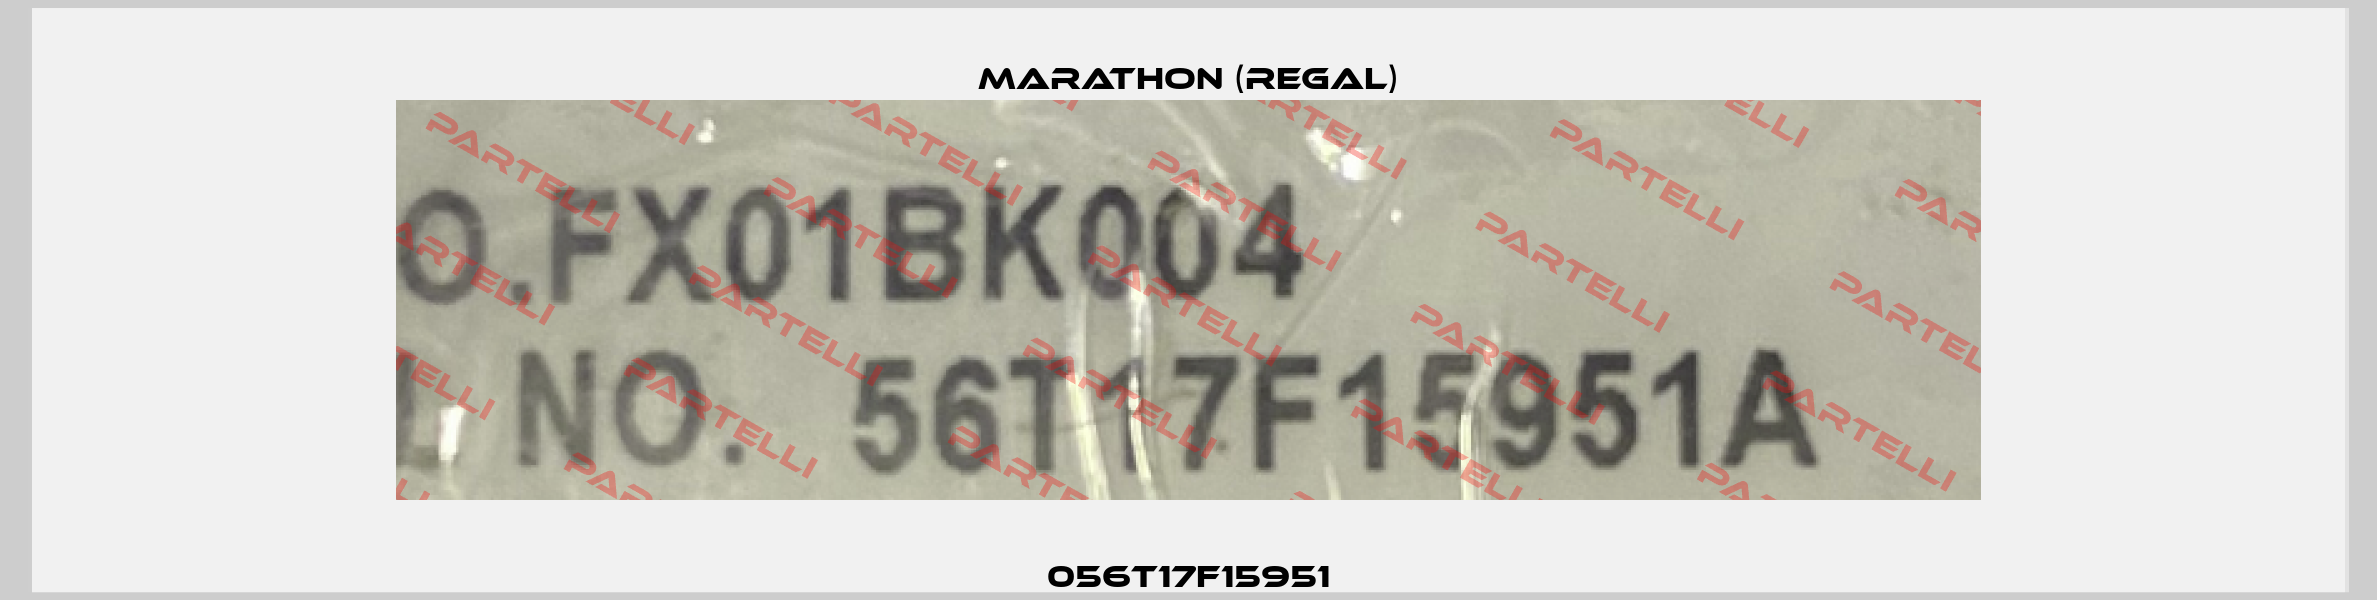 056T17F15951 Marathon (Regal)